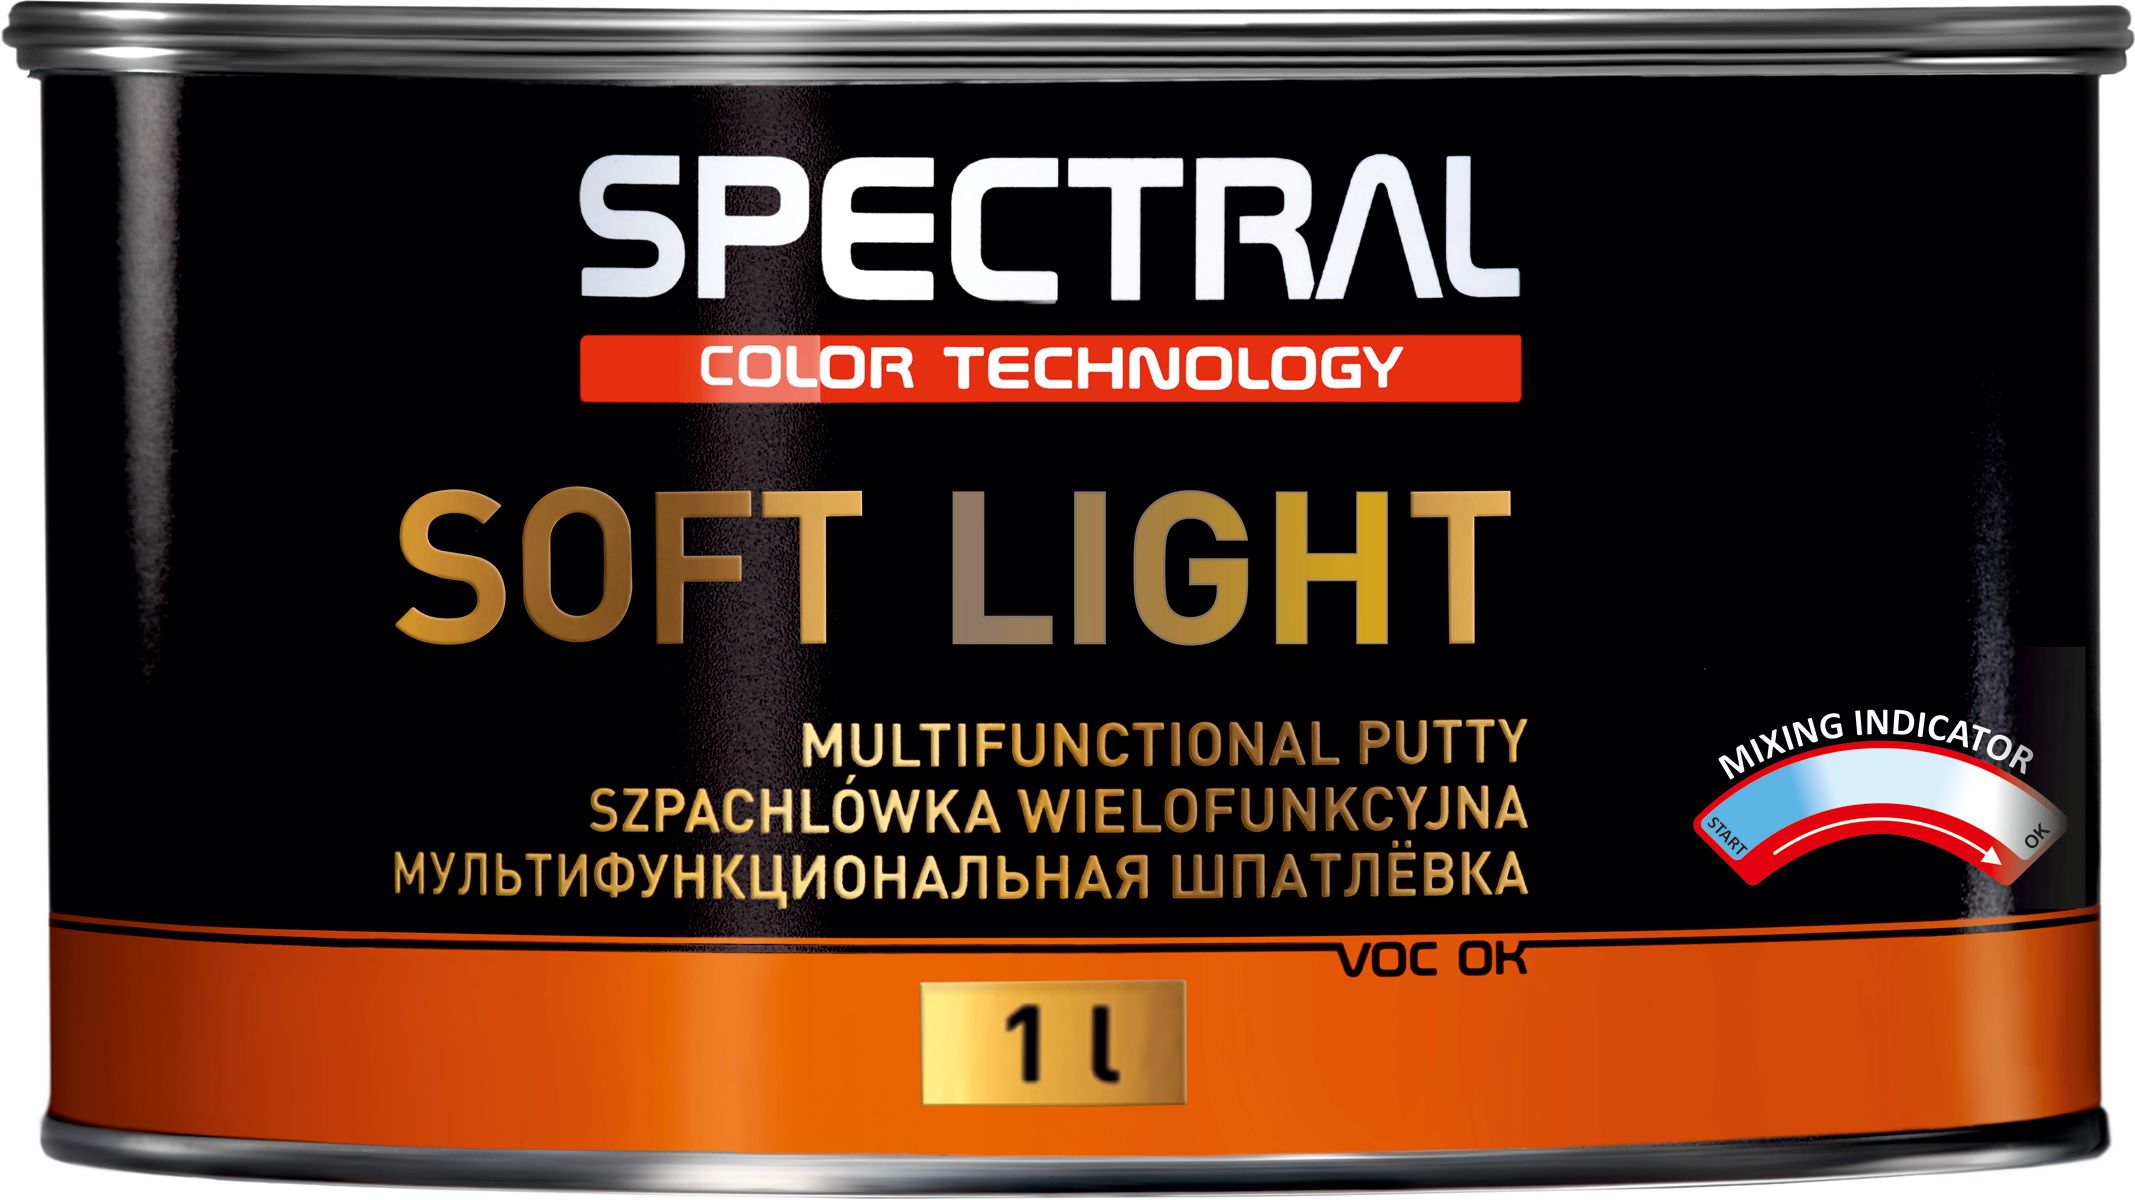 SOFT LIGHT - Шпатлевка многофункциональная